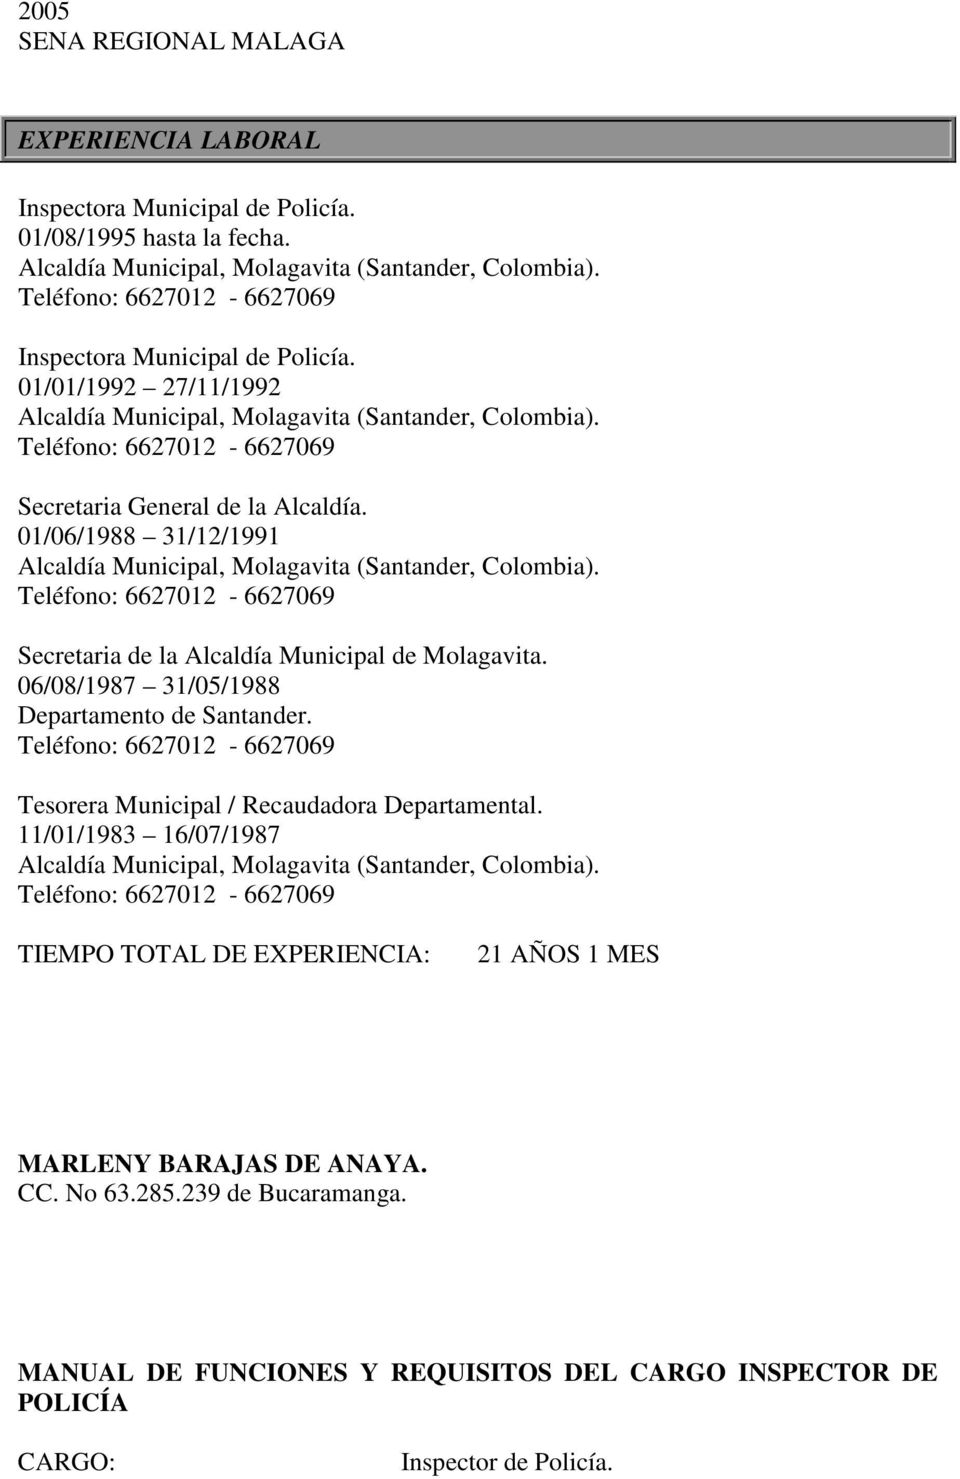 01/06/1988 31/12/1991 Alcaldía Municipal, Molagavita (Santander, Colombia). Teléfono 6627012-6627069 Secretaria de la Alcaldía Municipal de Molagavita. 06/08/1987 31/05/1988 Departamento de Santander.